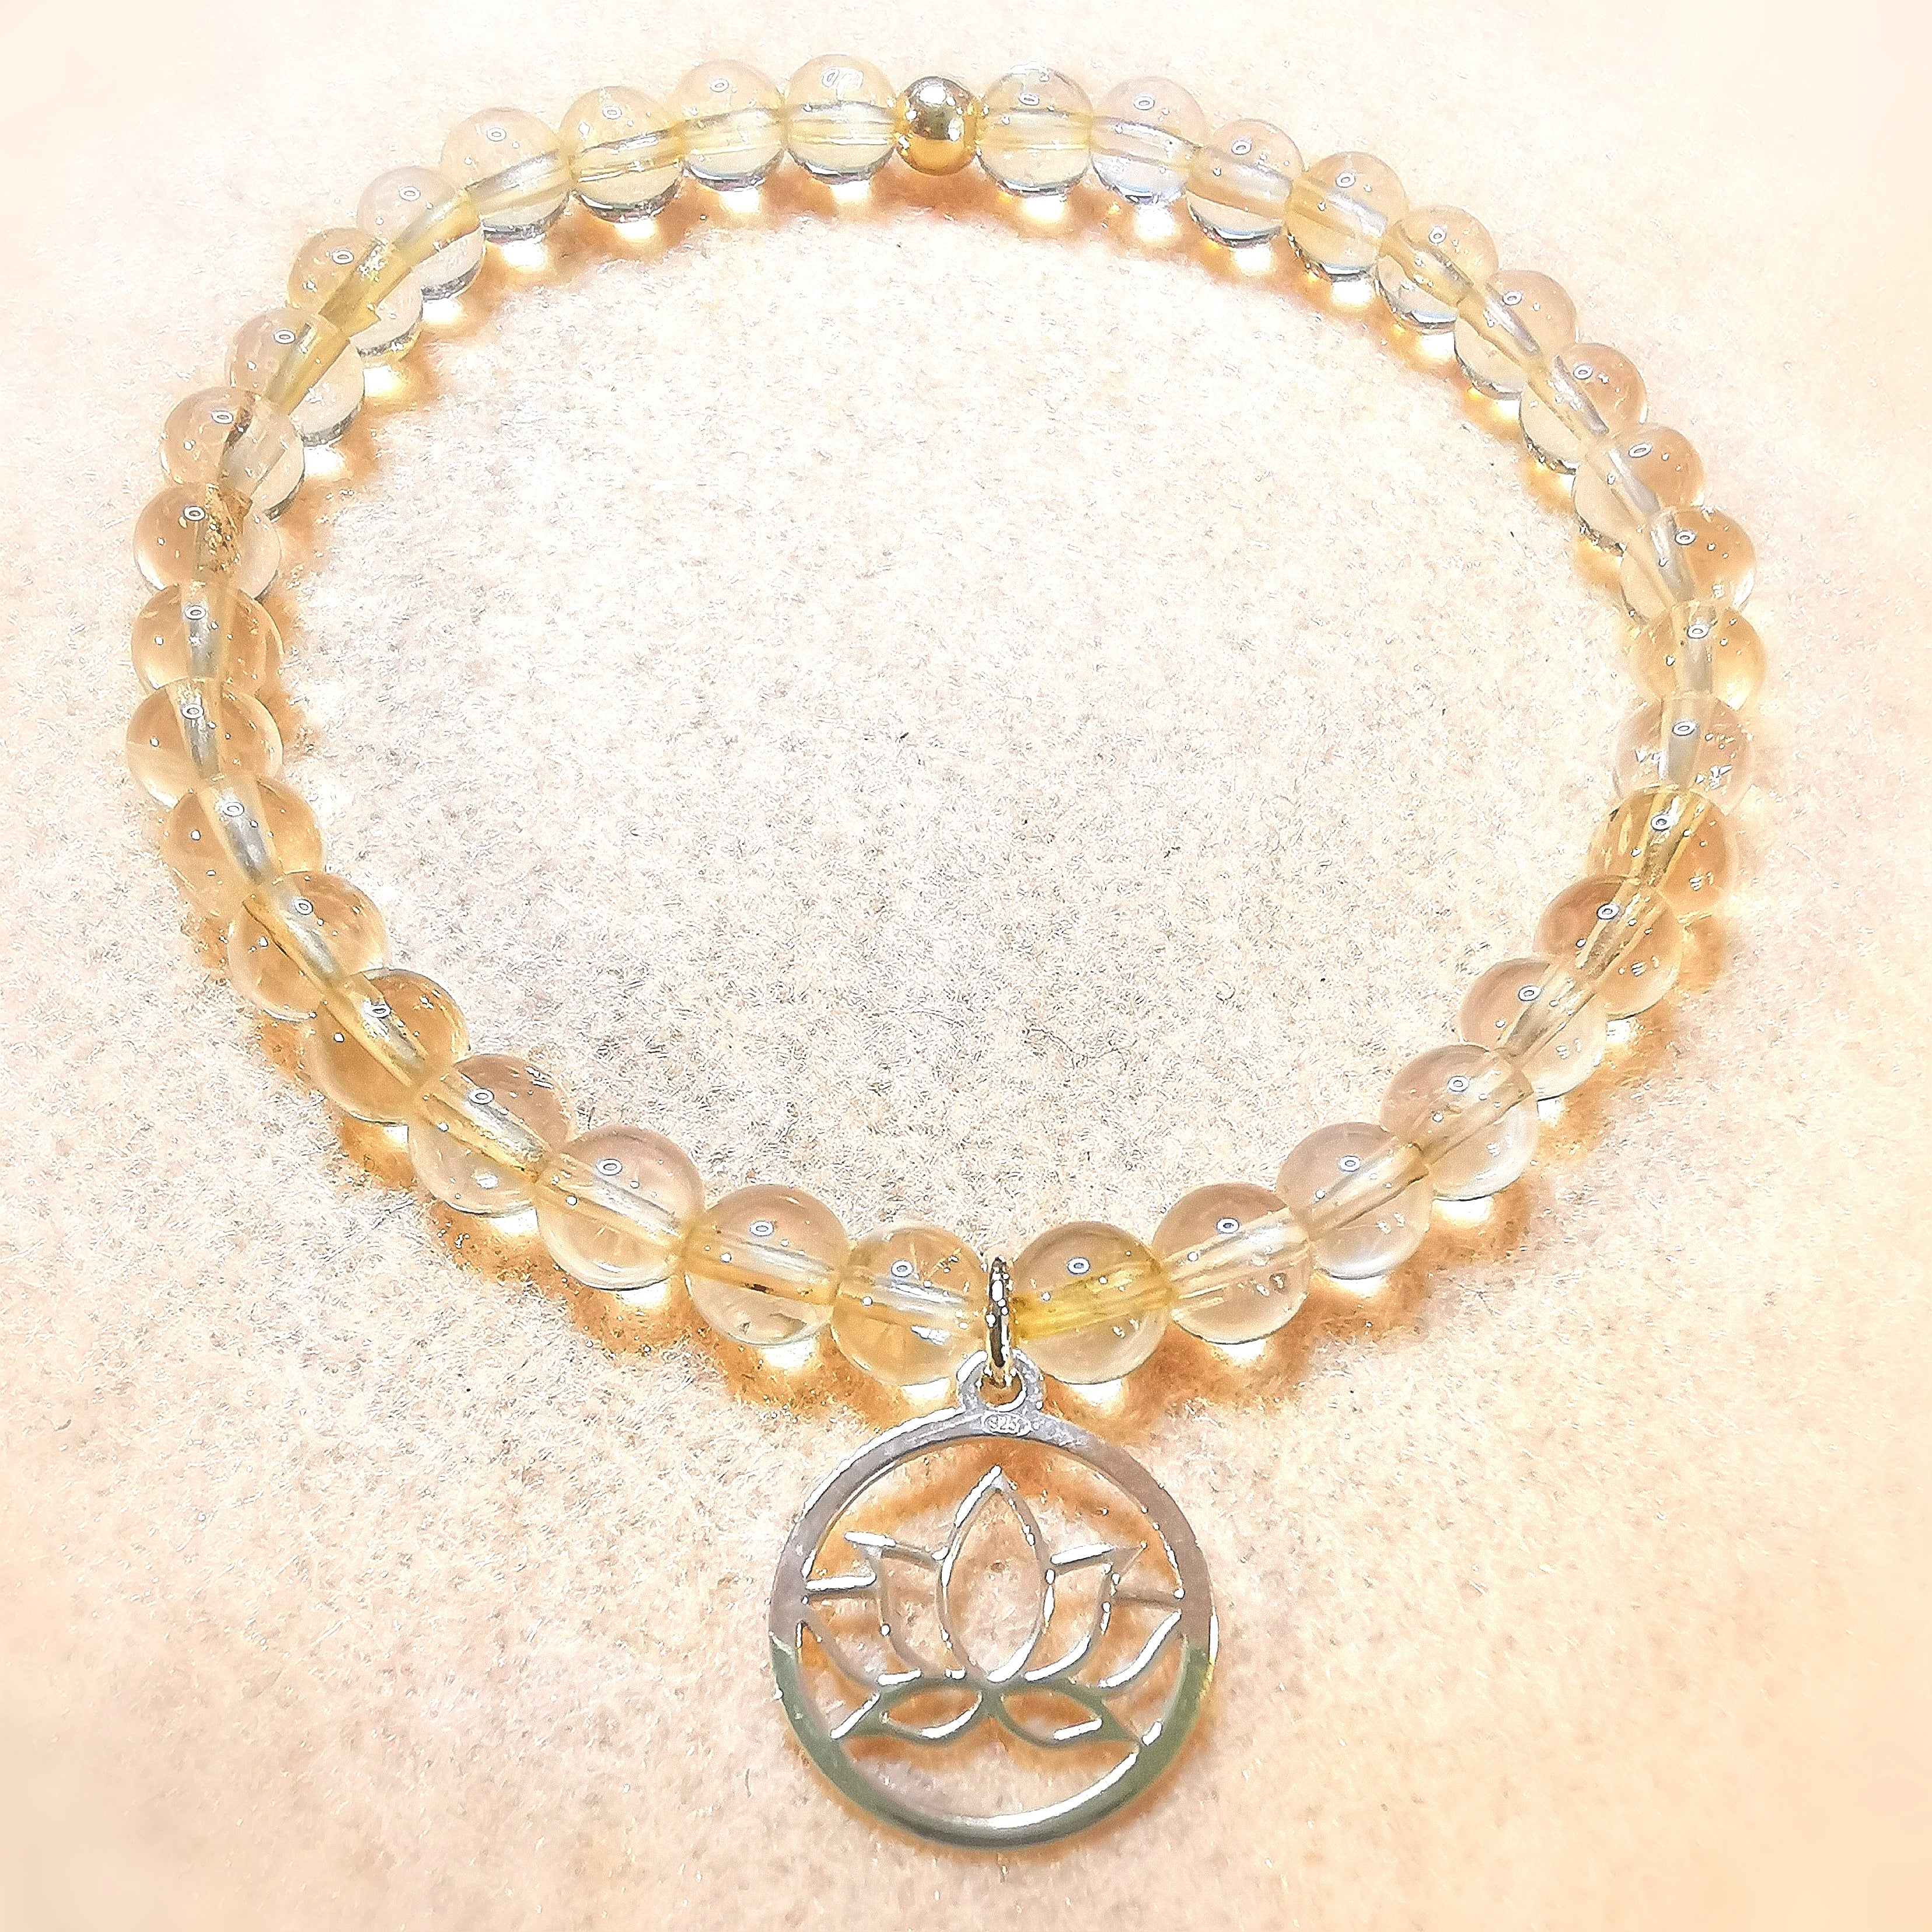 Citrin Sonnenlicht Karma Edelstein Armband mit Lotus Blüte, Schönheit des Lebens, samaki originals mallorca